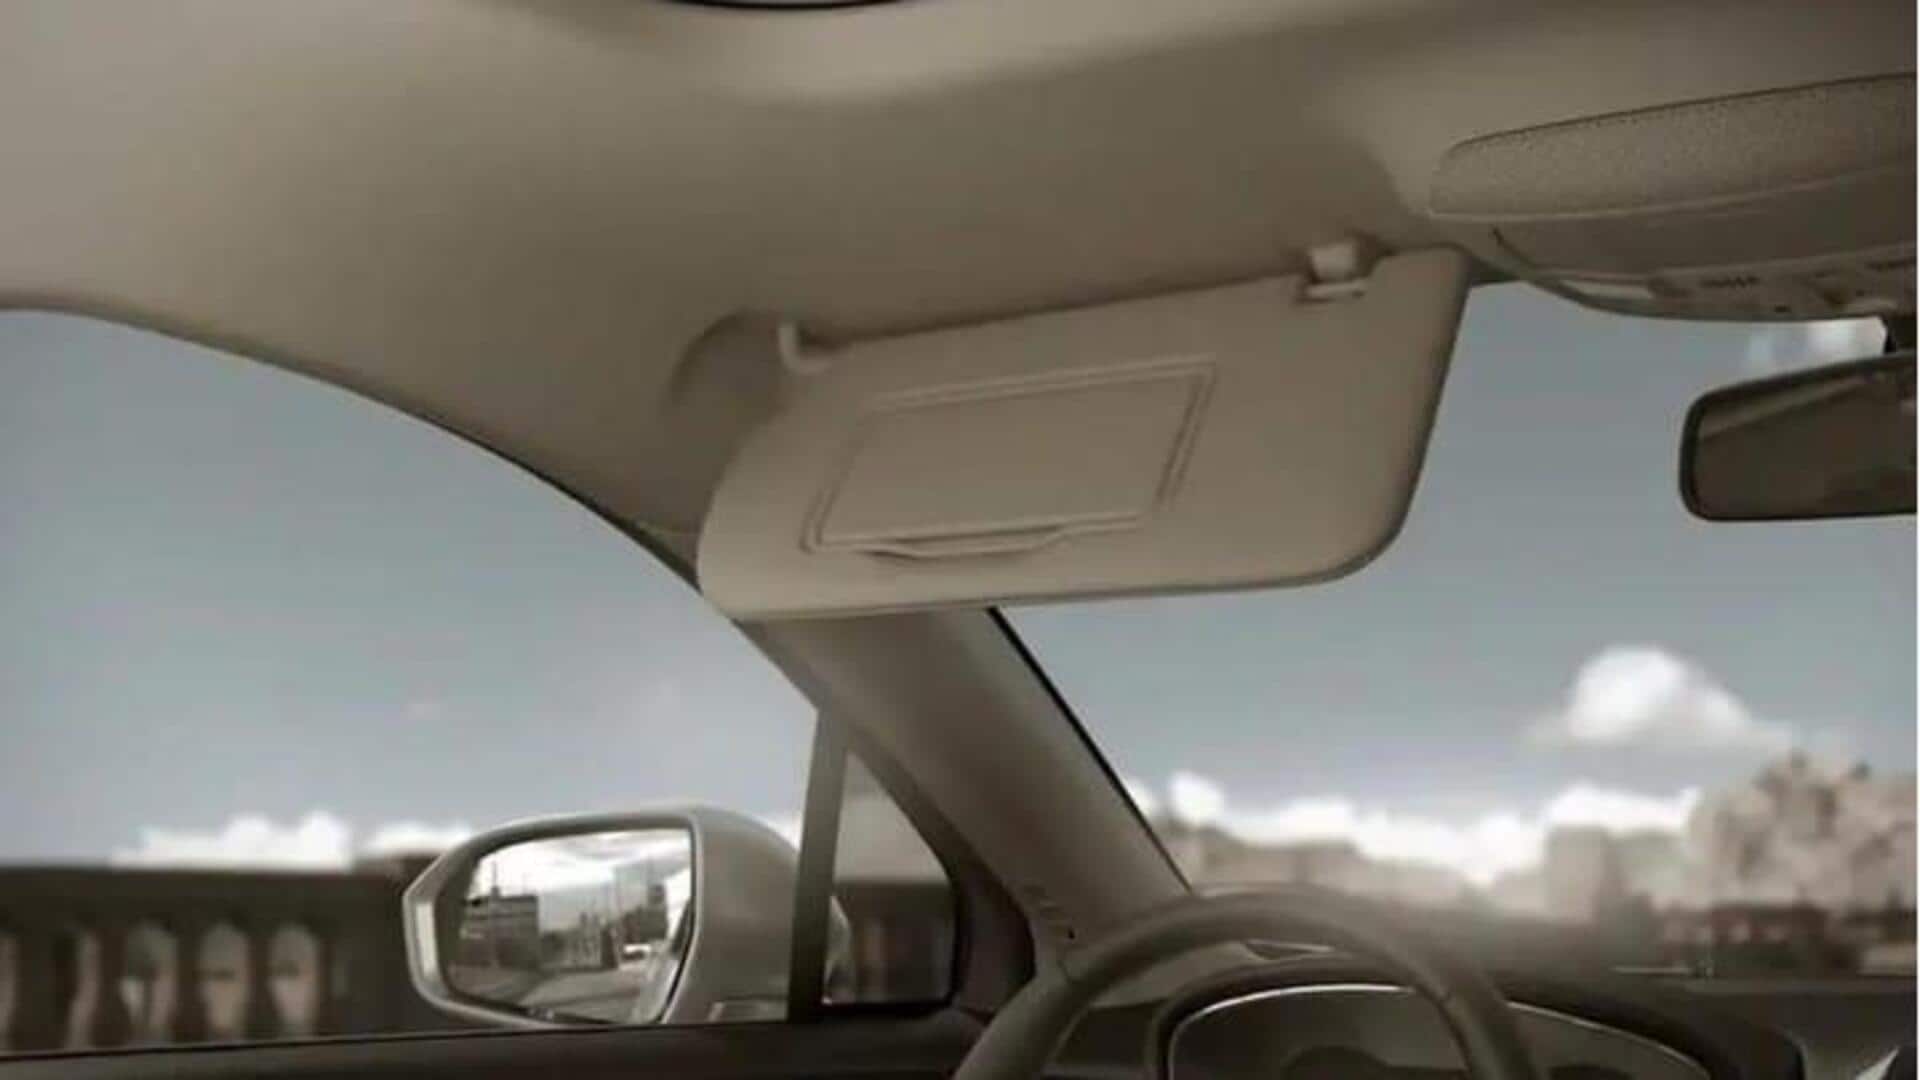 Ford mematenkan desain sun visor inovatif dengan fitur pemecah kaca